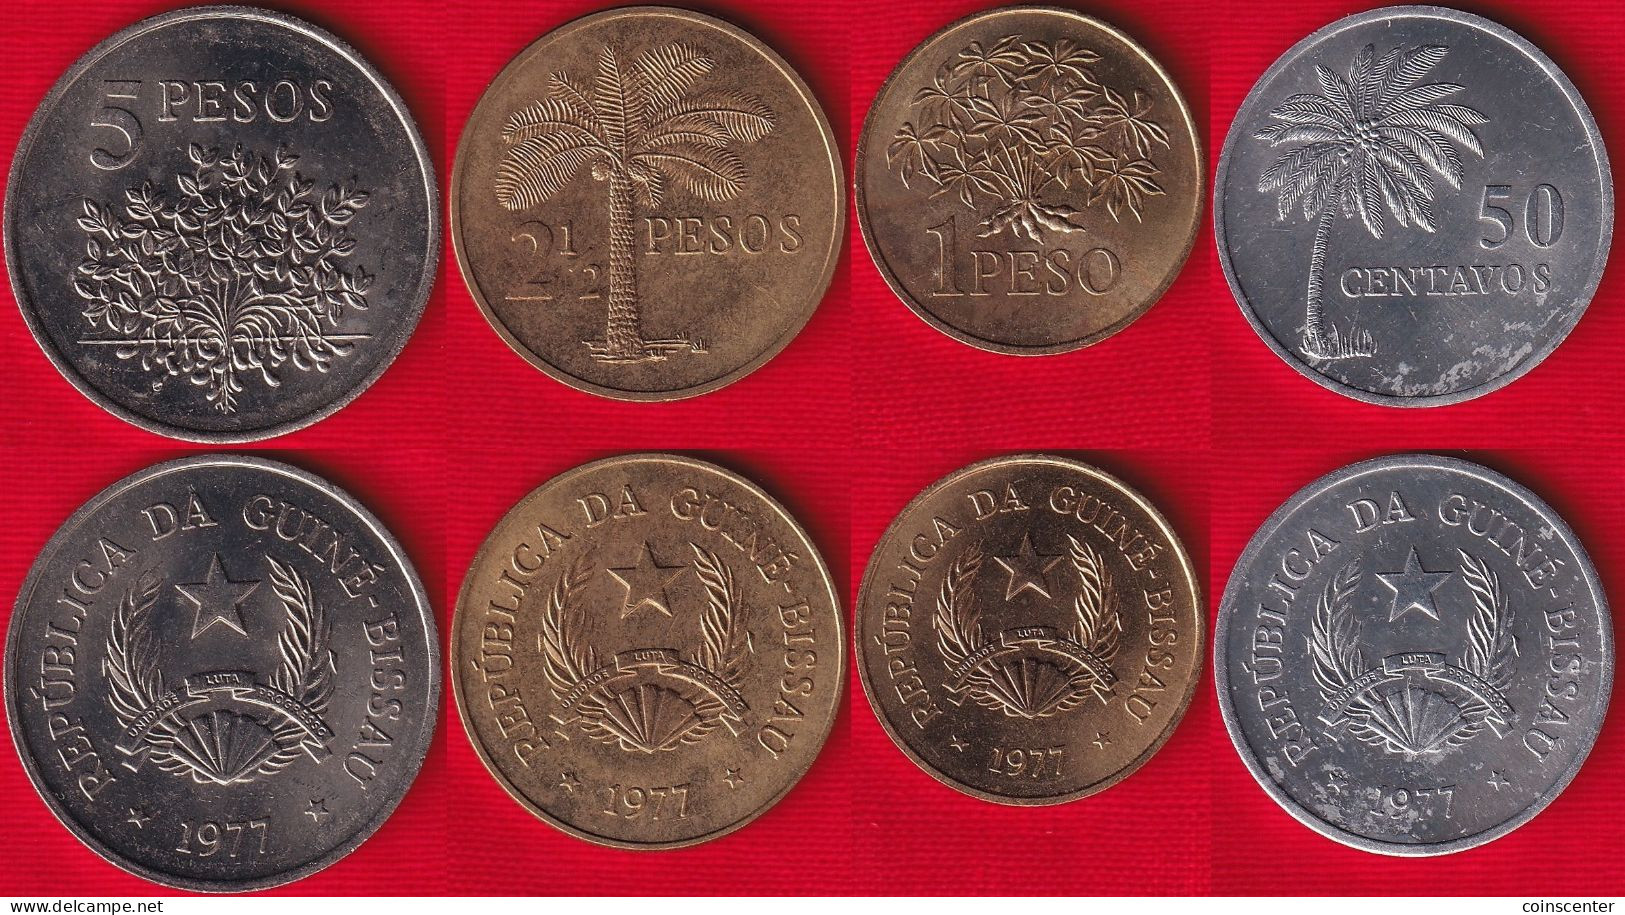 Guinea-Bissau Set Of 4 Coins: 50 Centavos - 5 Pesos 1977 "FAO" UNC - Guinea-Bissau